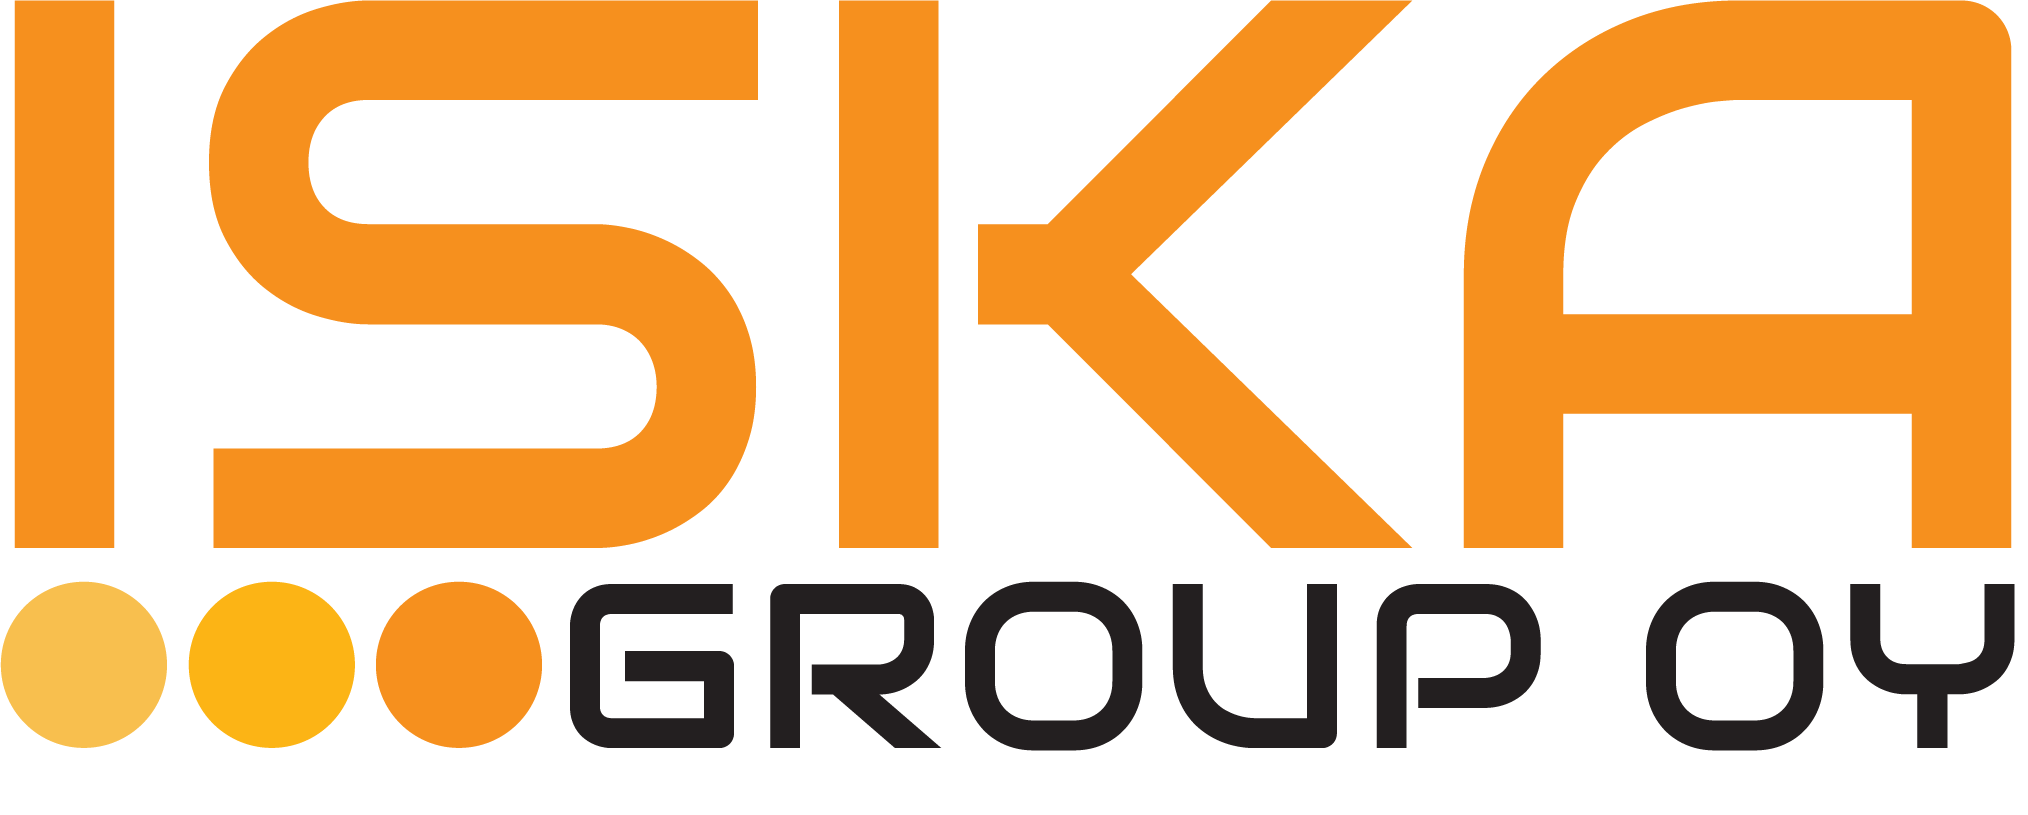 Iska Group Oy